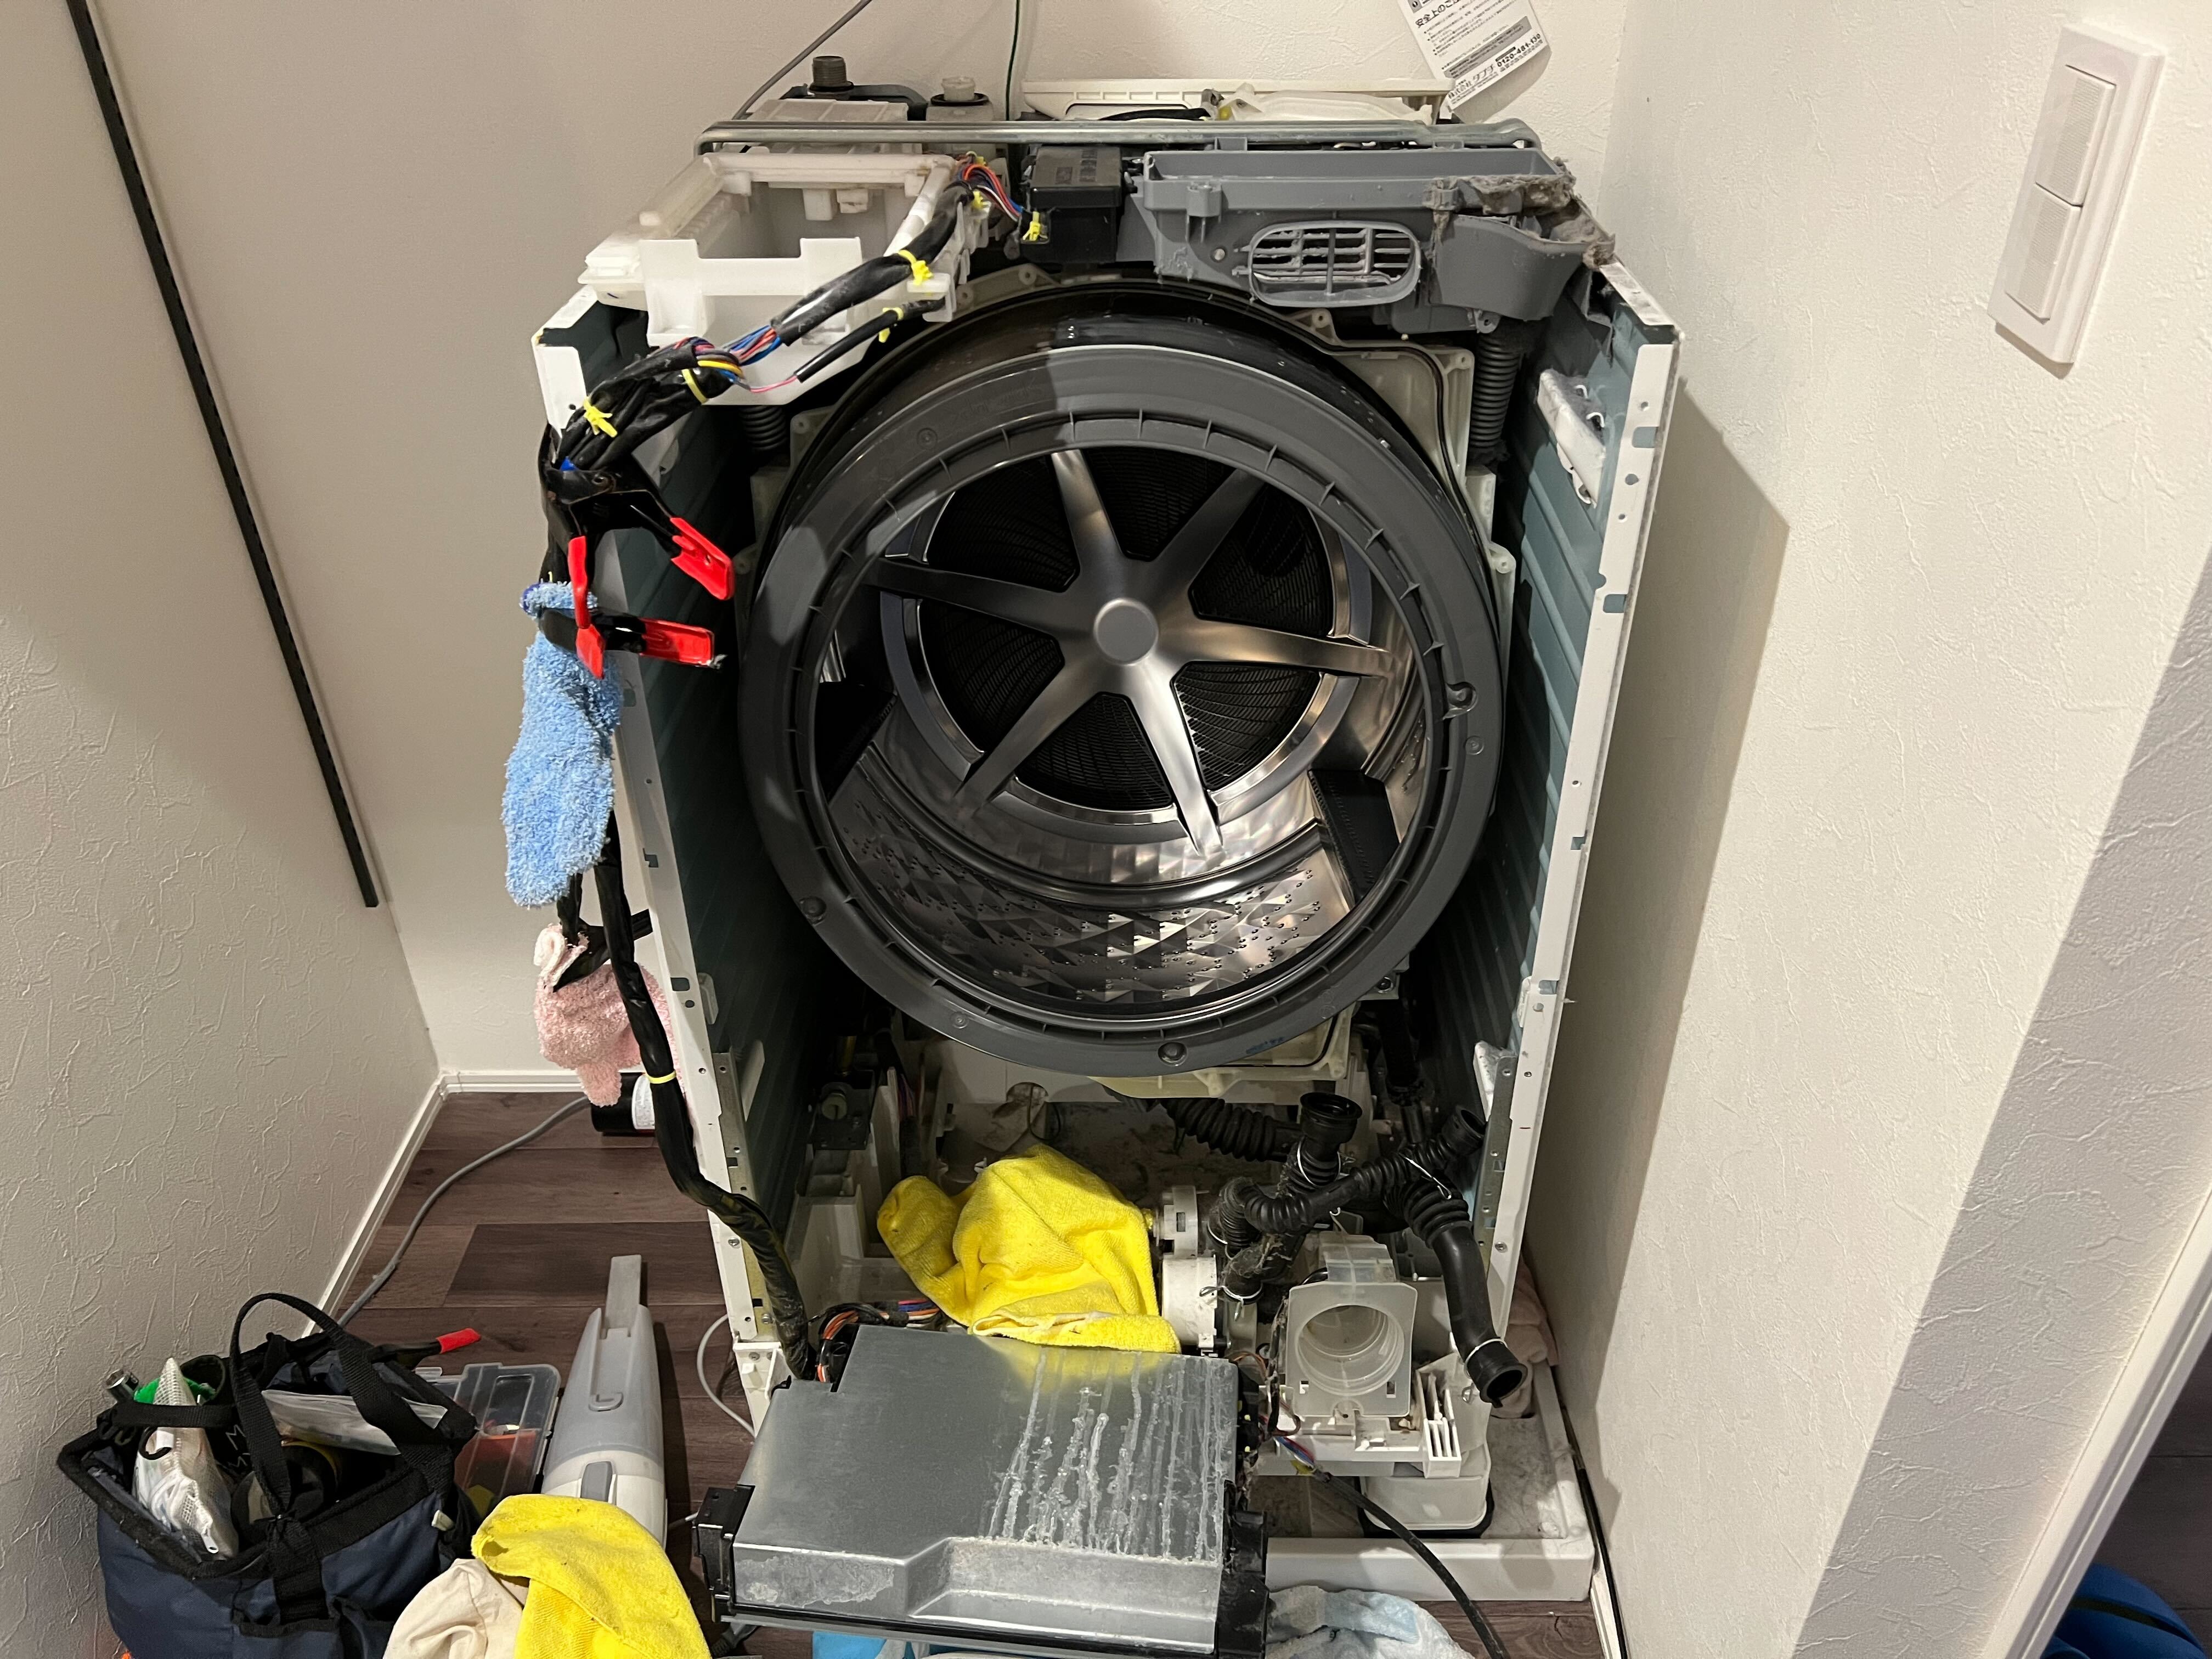 ドラム式洗濯機が解体されている様子。